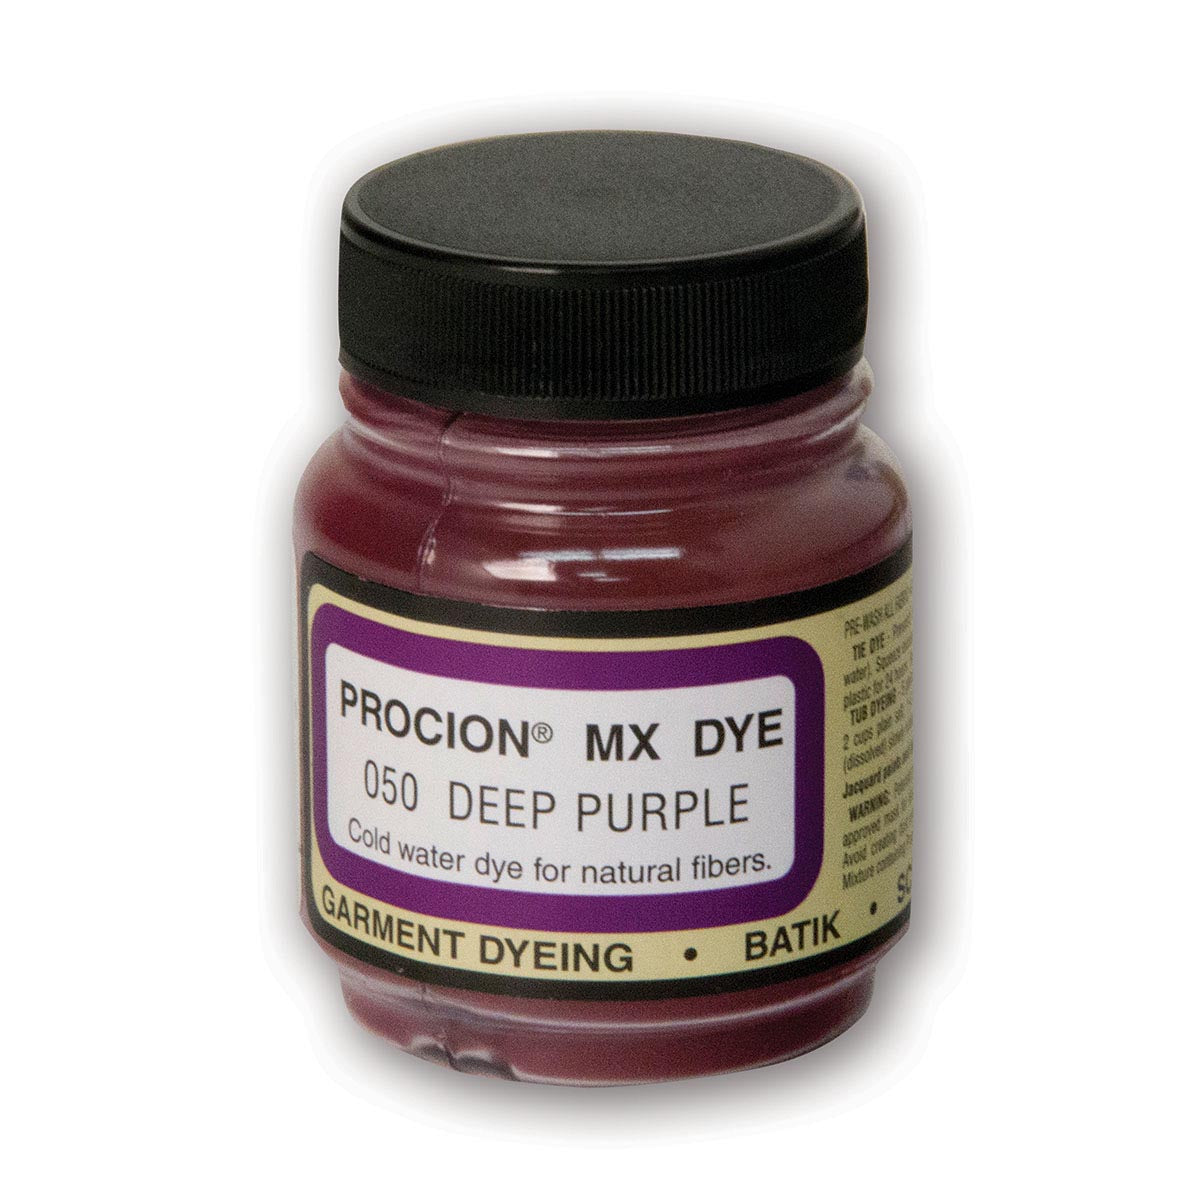 Jacquard - Procion Mx Dye - Fabric Textile - Diep Purple 050